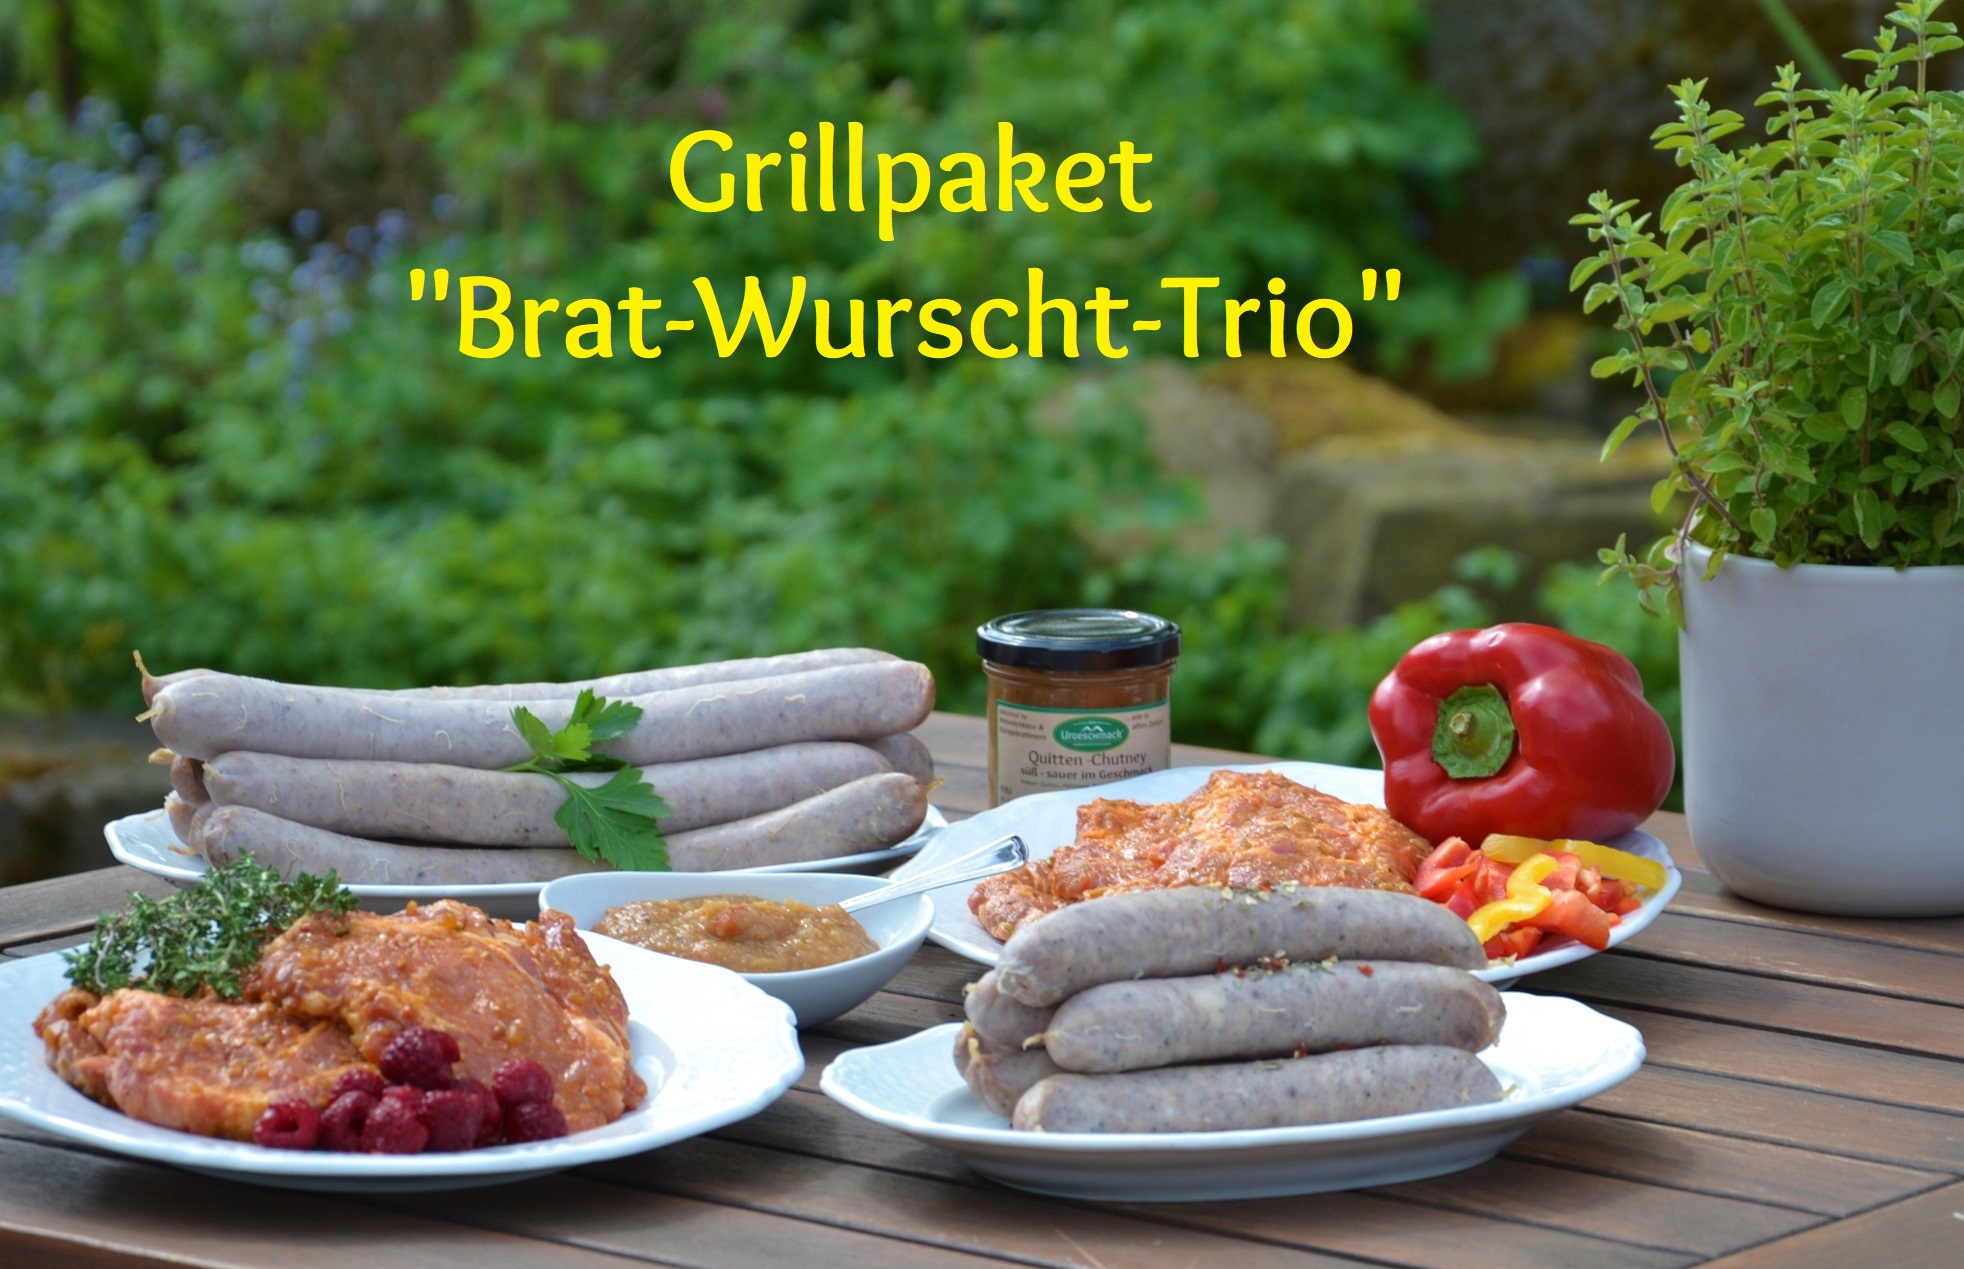 Brat-Wurscht-Trio * Grillpaket